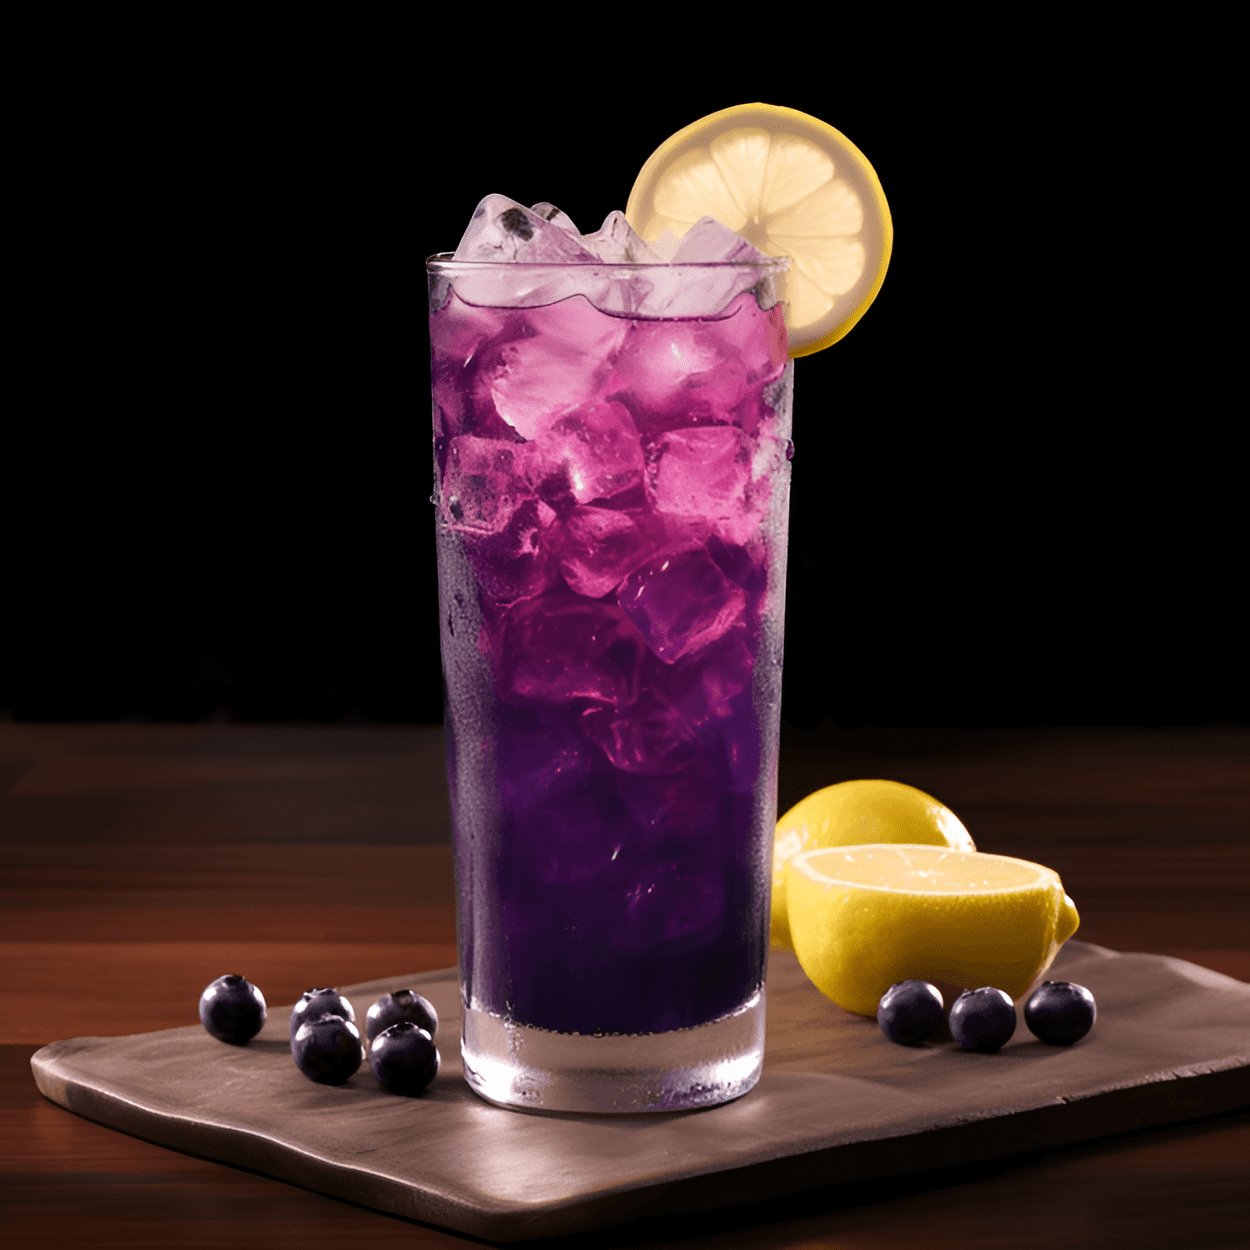 Blueberry Crush Cóctel Receta - El Blueberry Crush es un cóctel refrescante, ligeramente dulce y afrutado. El sabor de los arándanos frescos es prominente, equilibrado por la acidez del limón y el ligero ardor del vodka. El agua de soda añade una textura burbujeante, lo que lo convierte en una bebida ligera y agradable.